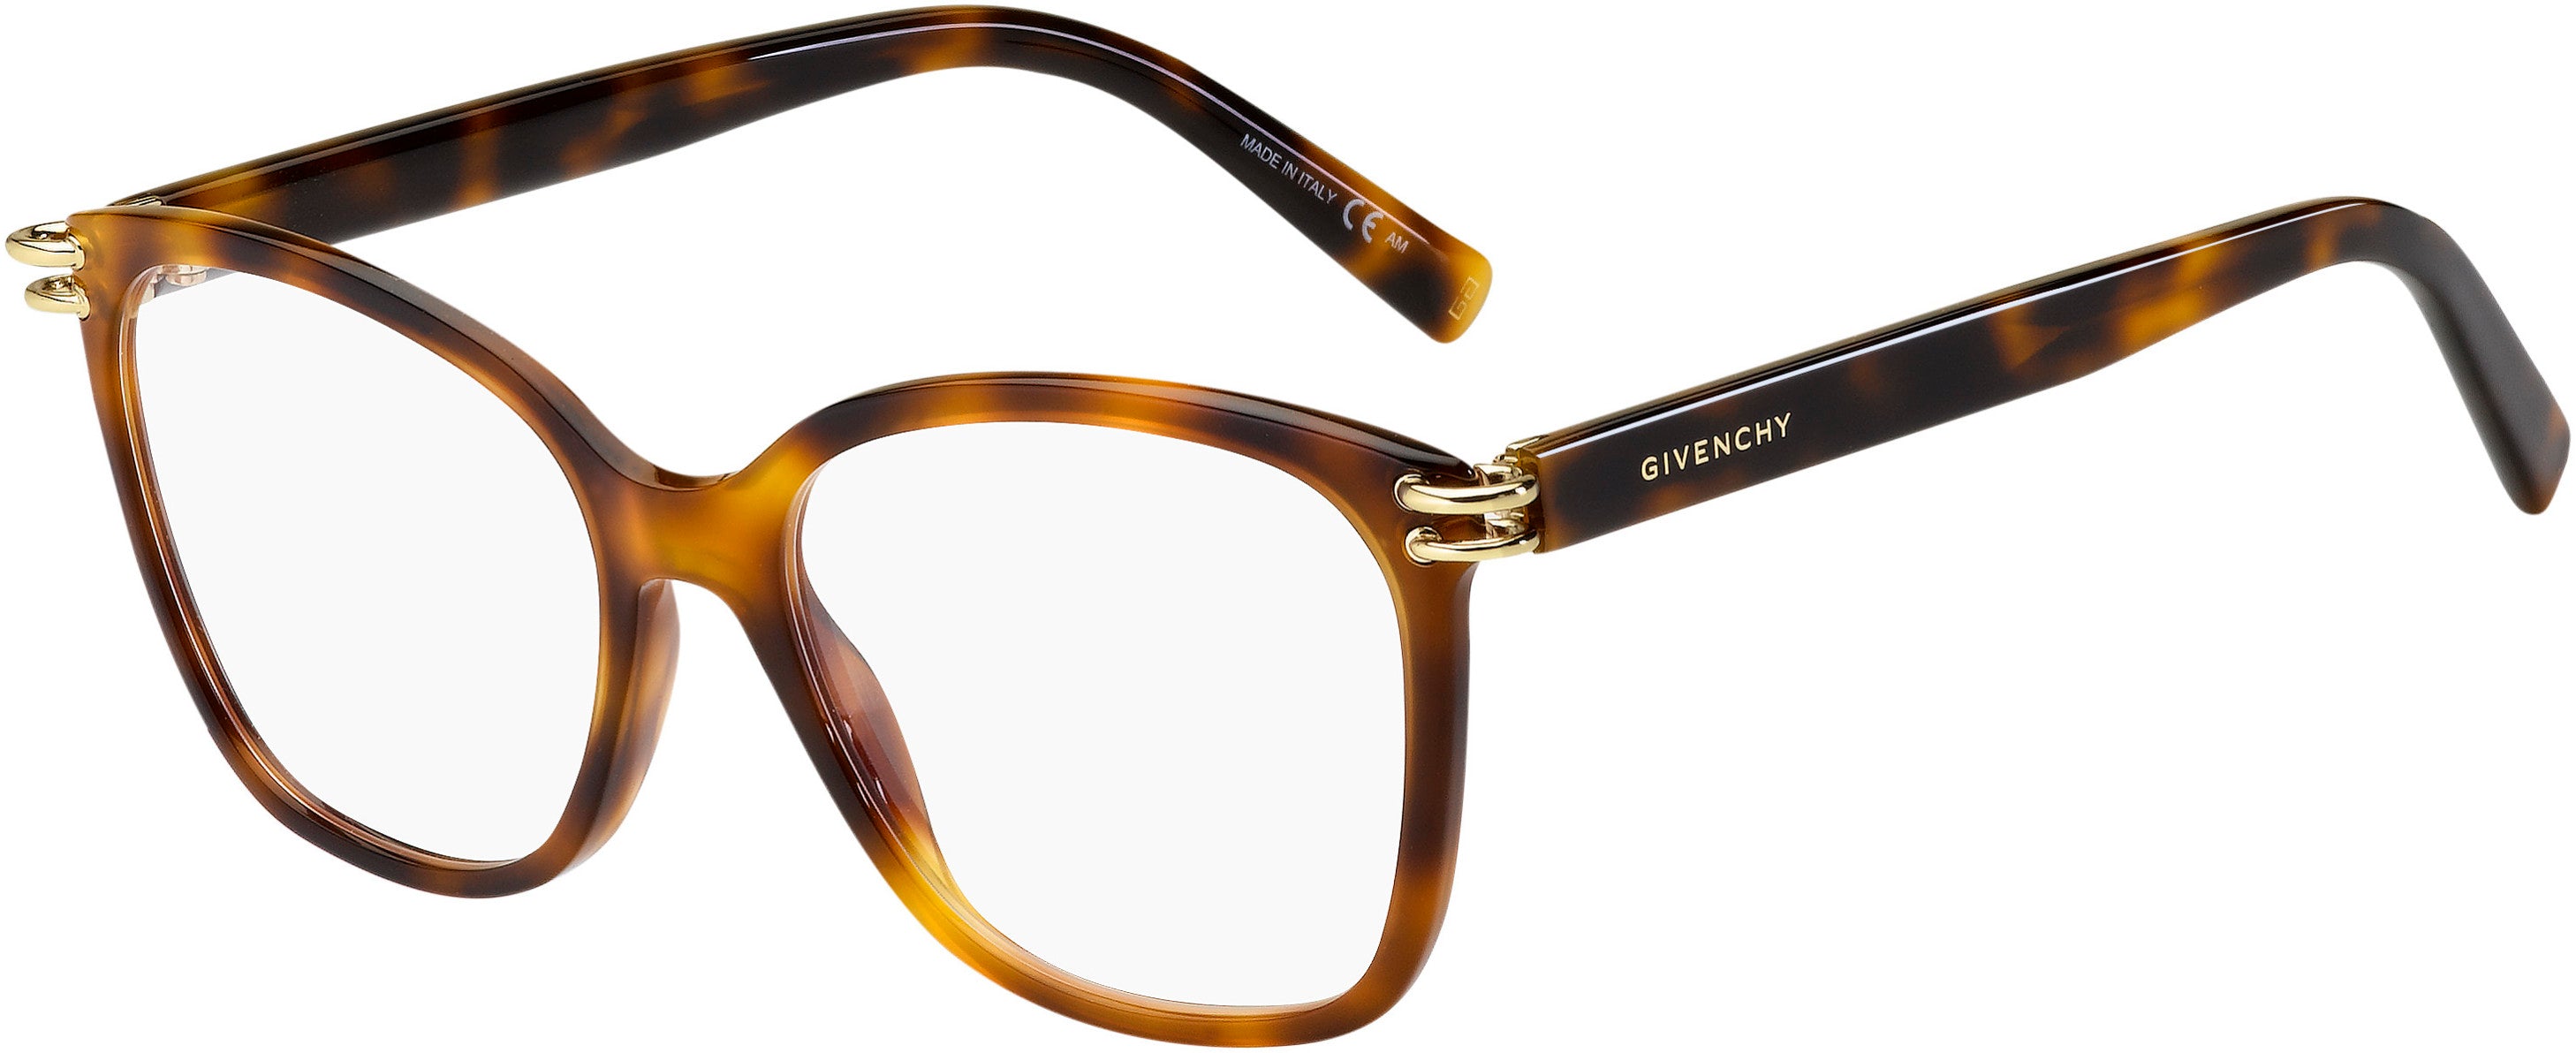  Givenchy 0130 Square Eyeglasses 0WR9-0WR9  Brown Havana (00 Demo Lens)